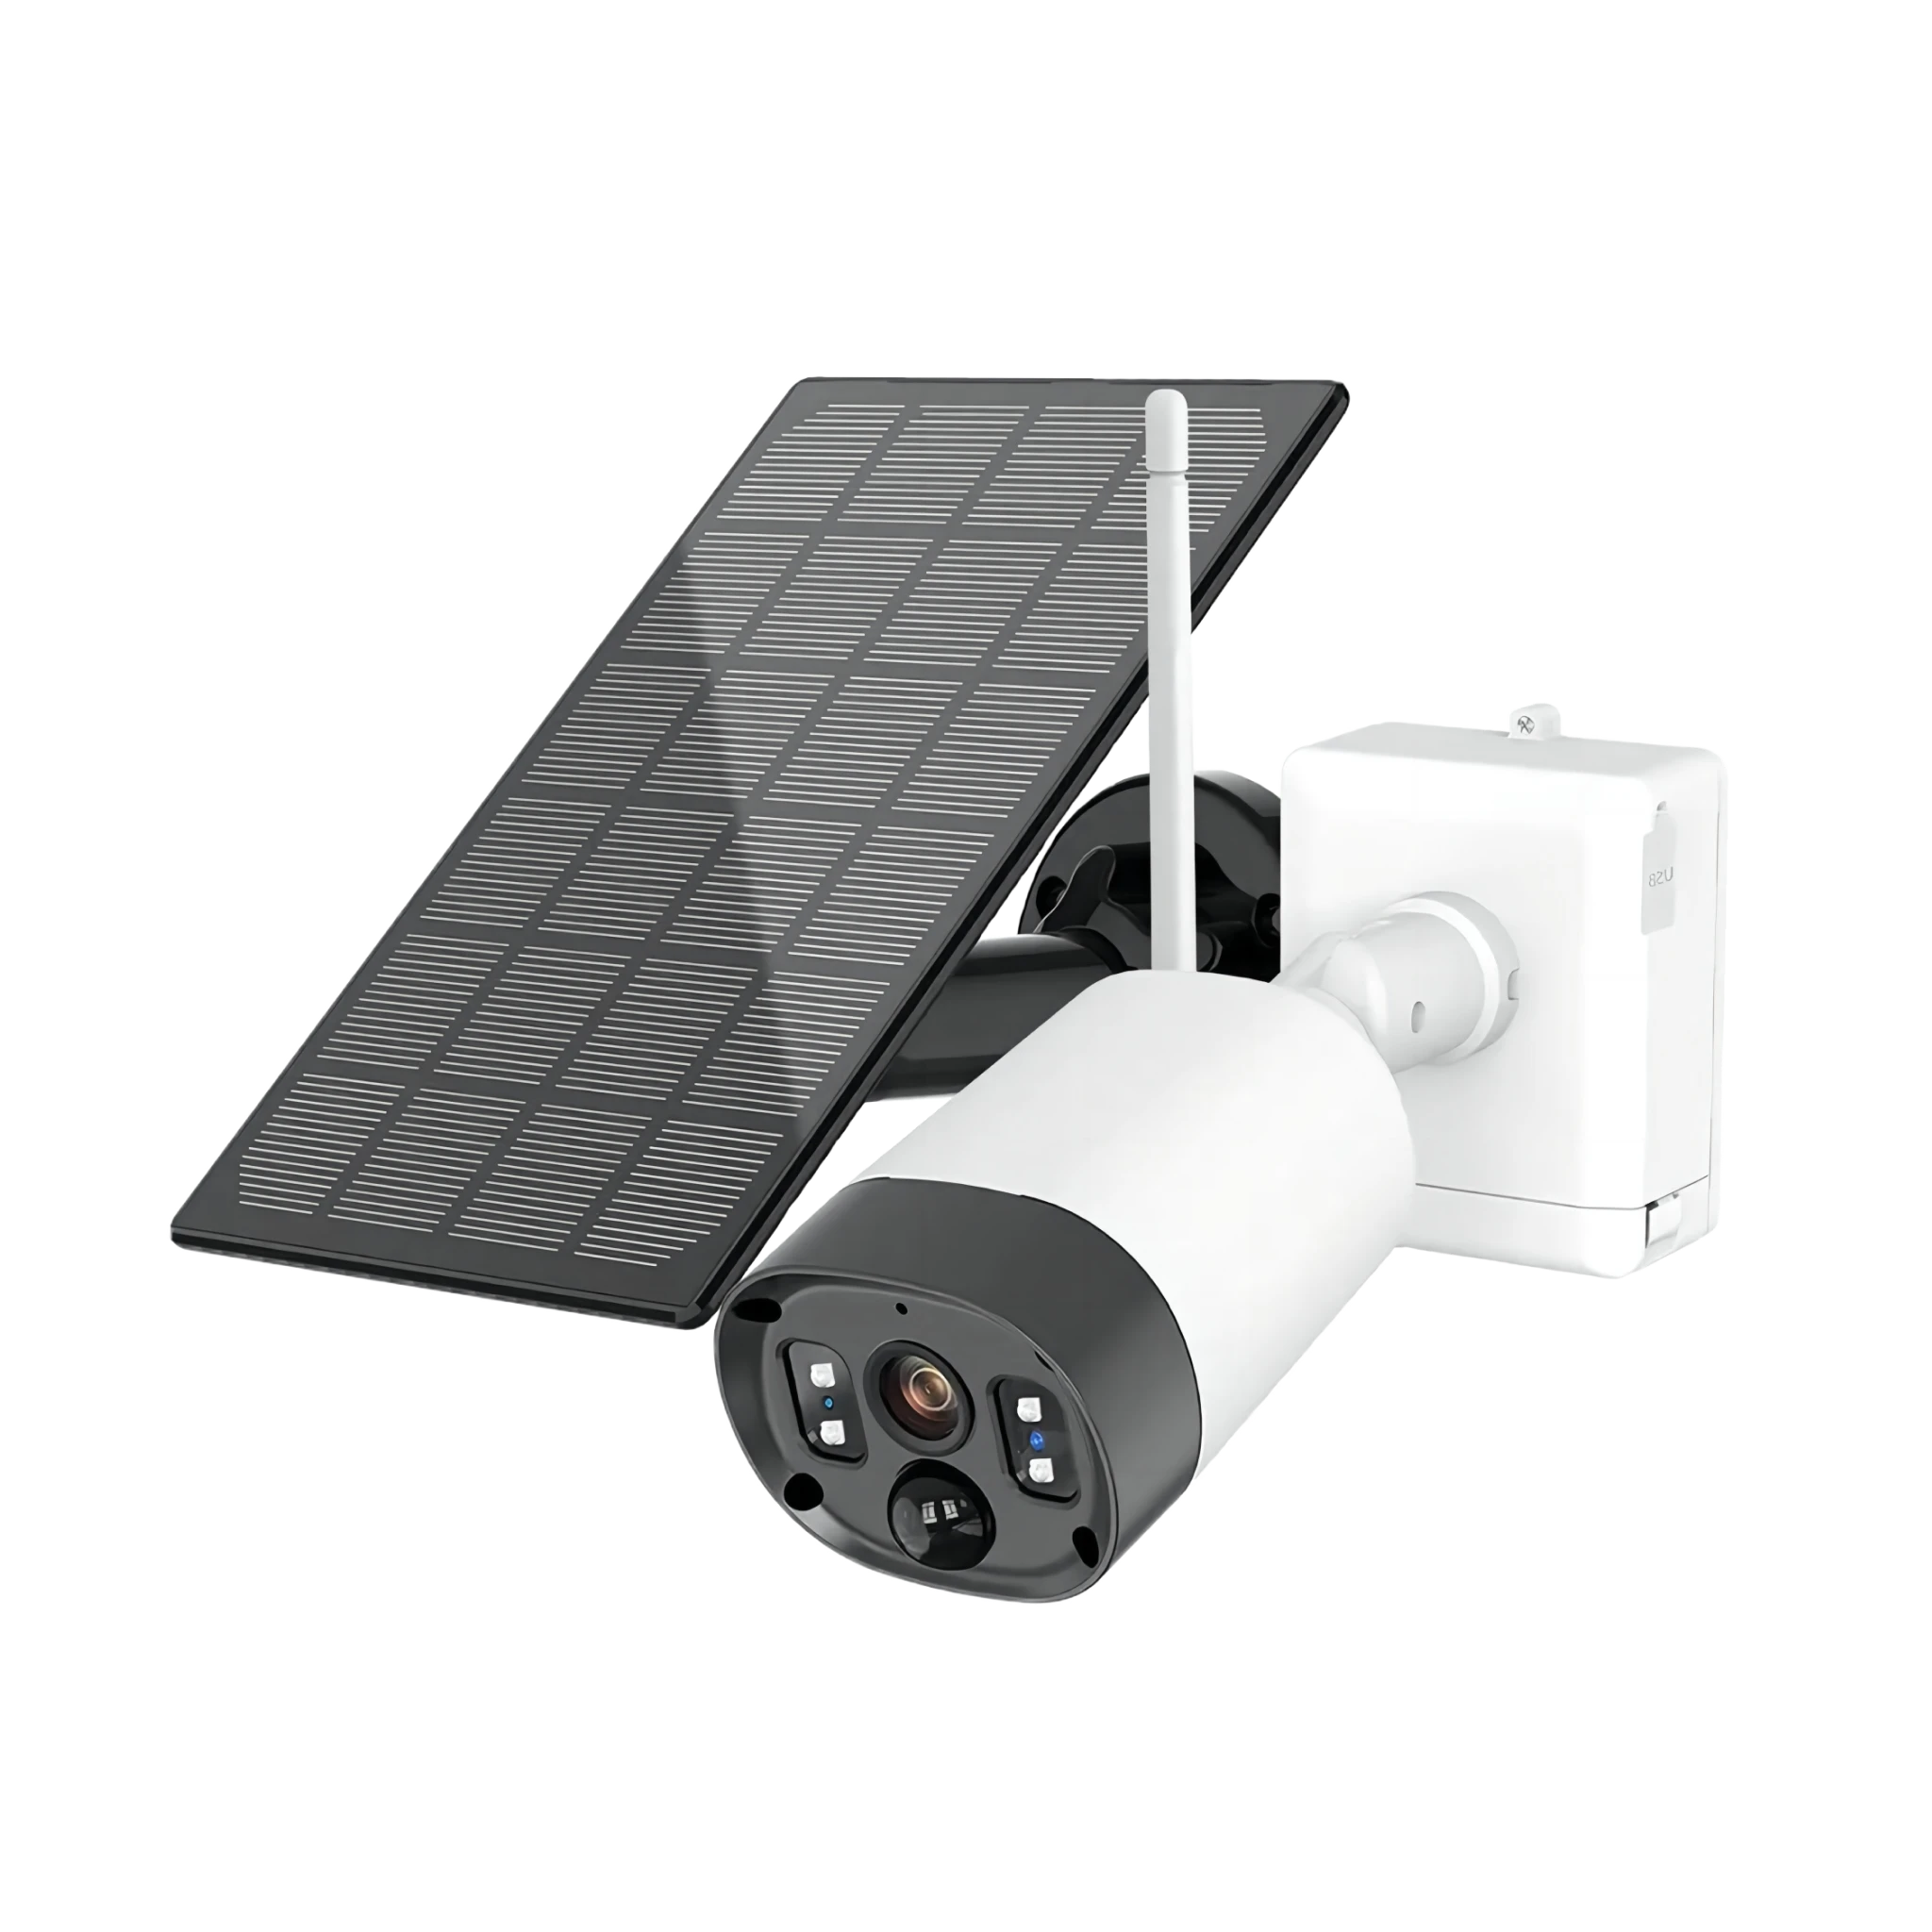 Überwachungskamera Solarpanel